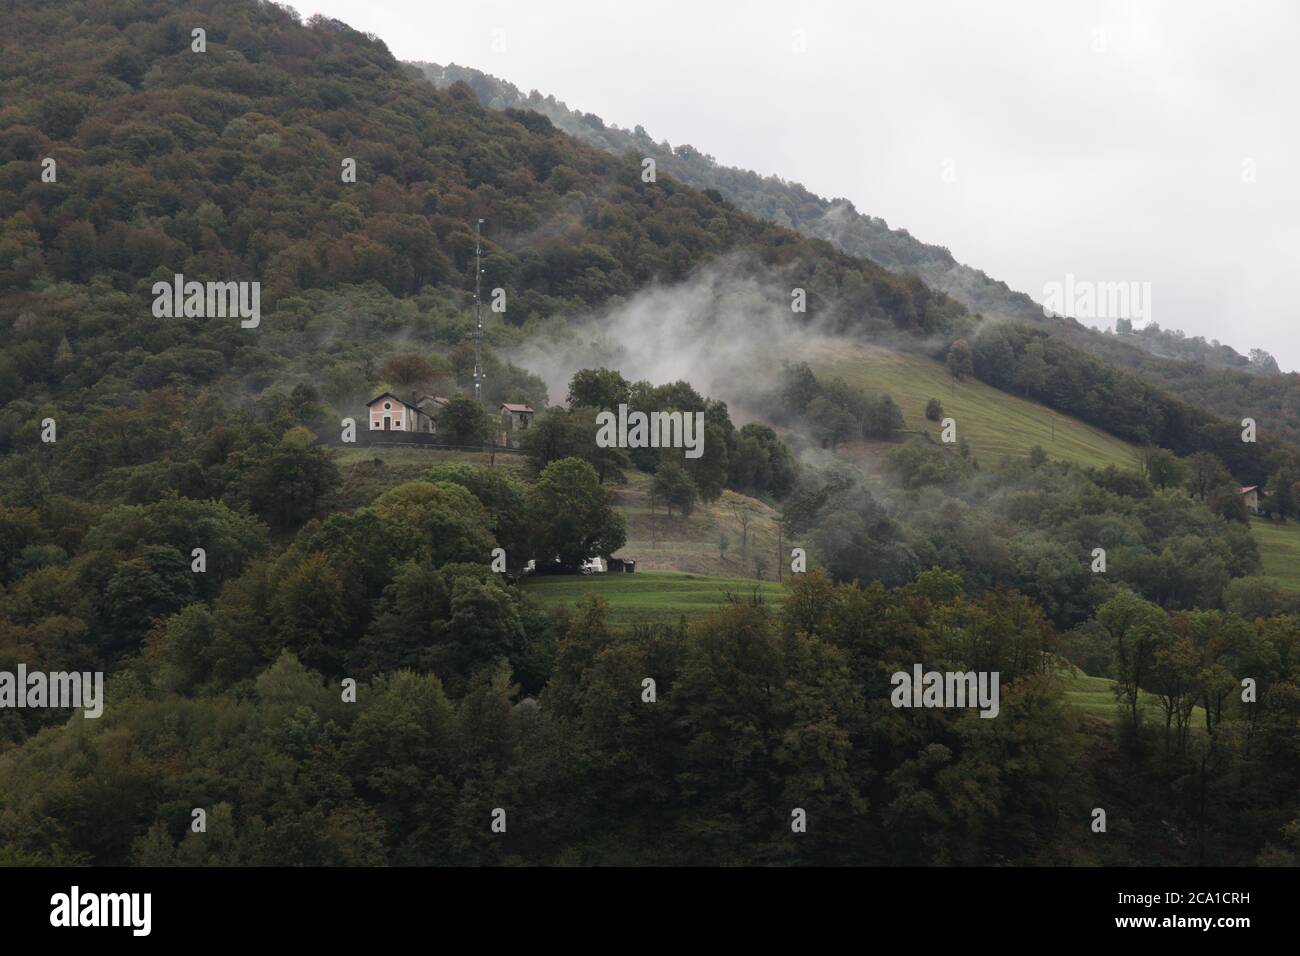 Casima, Canton Ticino (TI)/ Switzerland - September 29 2013: Vilage Casima in Canton Ticino, located in the valley Muggio on a foggy autumn day Stock Photo